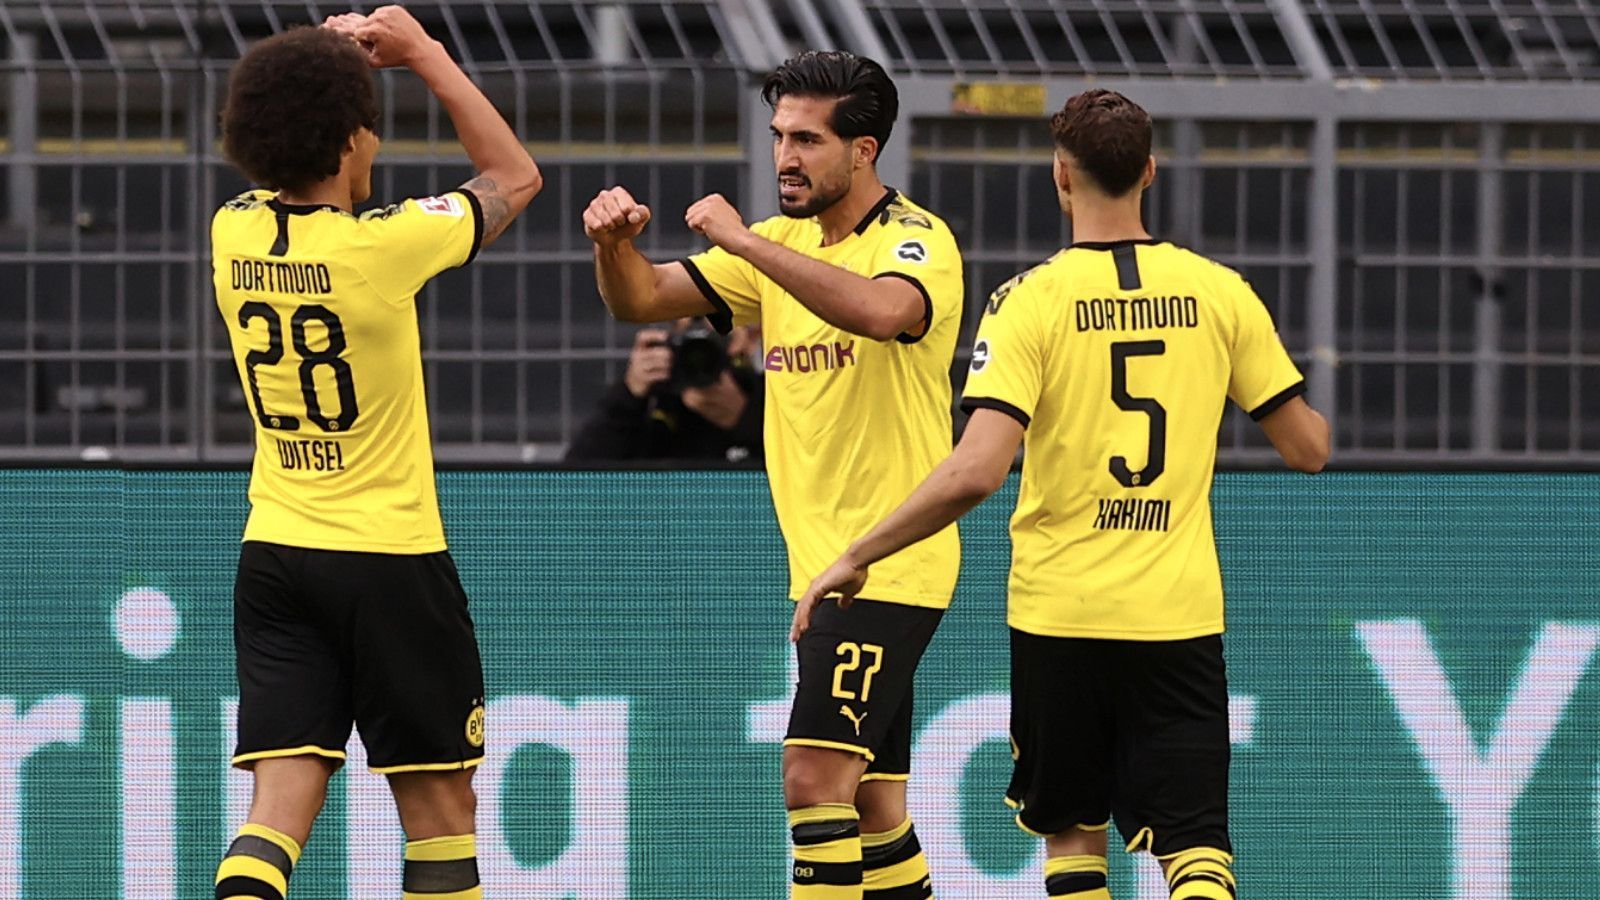 
                <strong>1:0 gegen Hertha! Die BVB-Stars in der Einzelkritik</strong><br>
                Ohne allzu viel Glanz gewinnt Borussia Dortmund mit 1:0 gegen Hertha BSC und sichert somit den 2. Tabellenplatz ab. ran.de bewertet die Leistungen der BVB-Spieler.
              